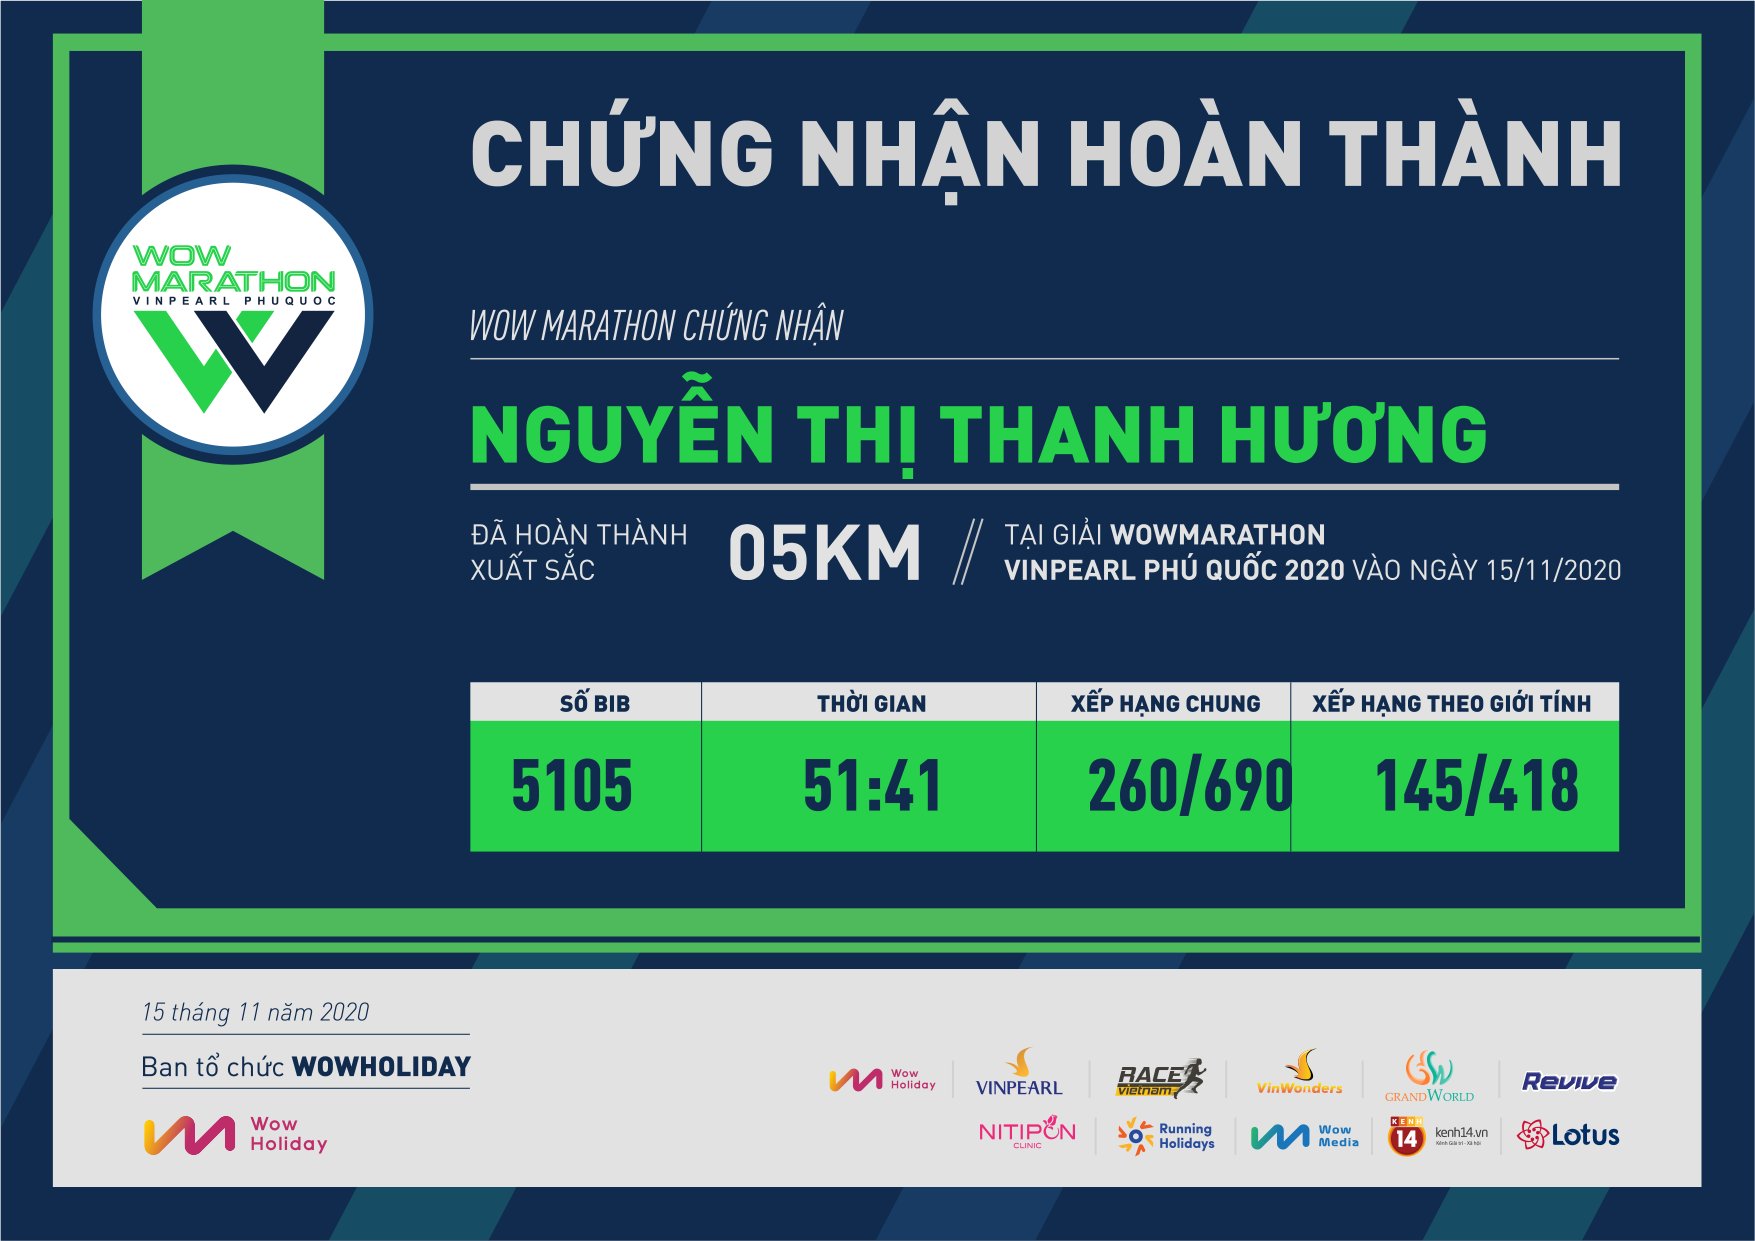 5105 - Nguyễn Thị Thanh Hương